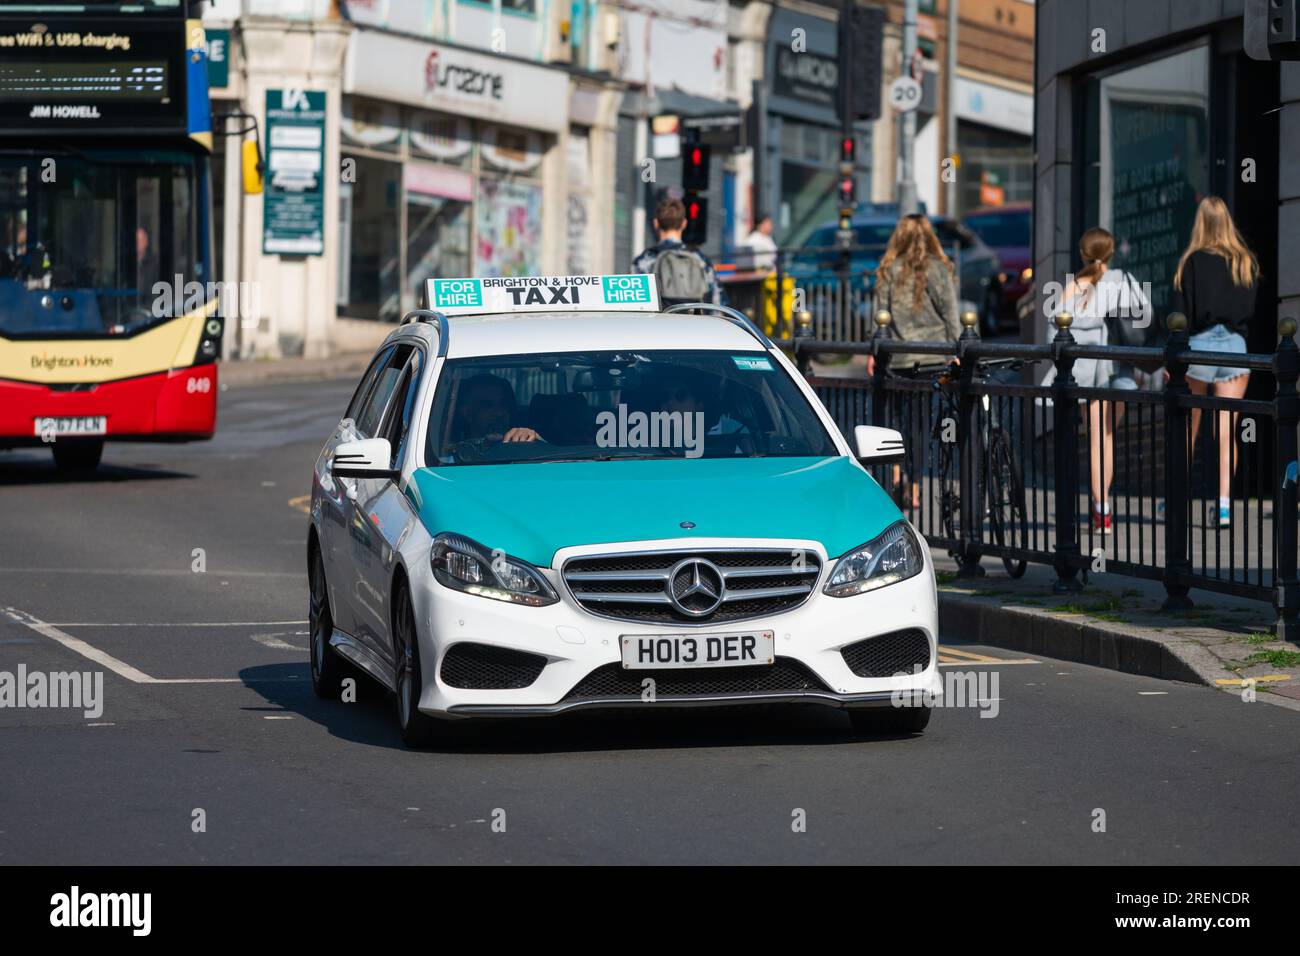 Taxi, un'auto Mercedes, nella trafficata città di Brighton & Hove, con livrea verde e bianca utilizzata da molti taxi di Brighton. A Brighton, Inghilterra, Regno Unito. Foto Stock